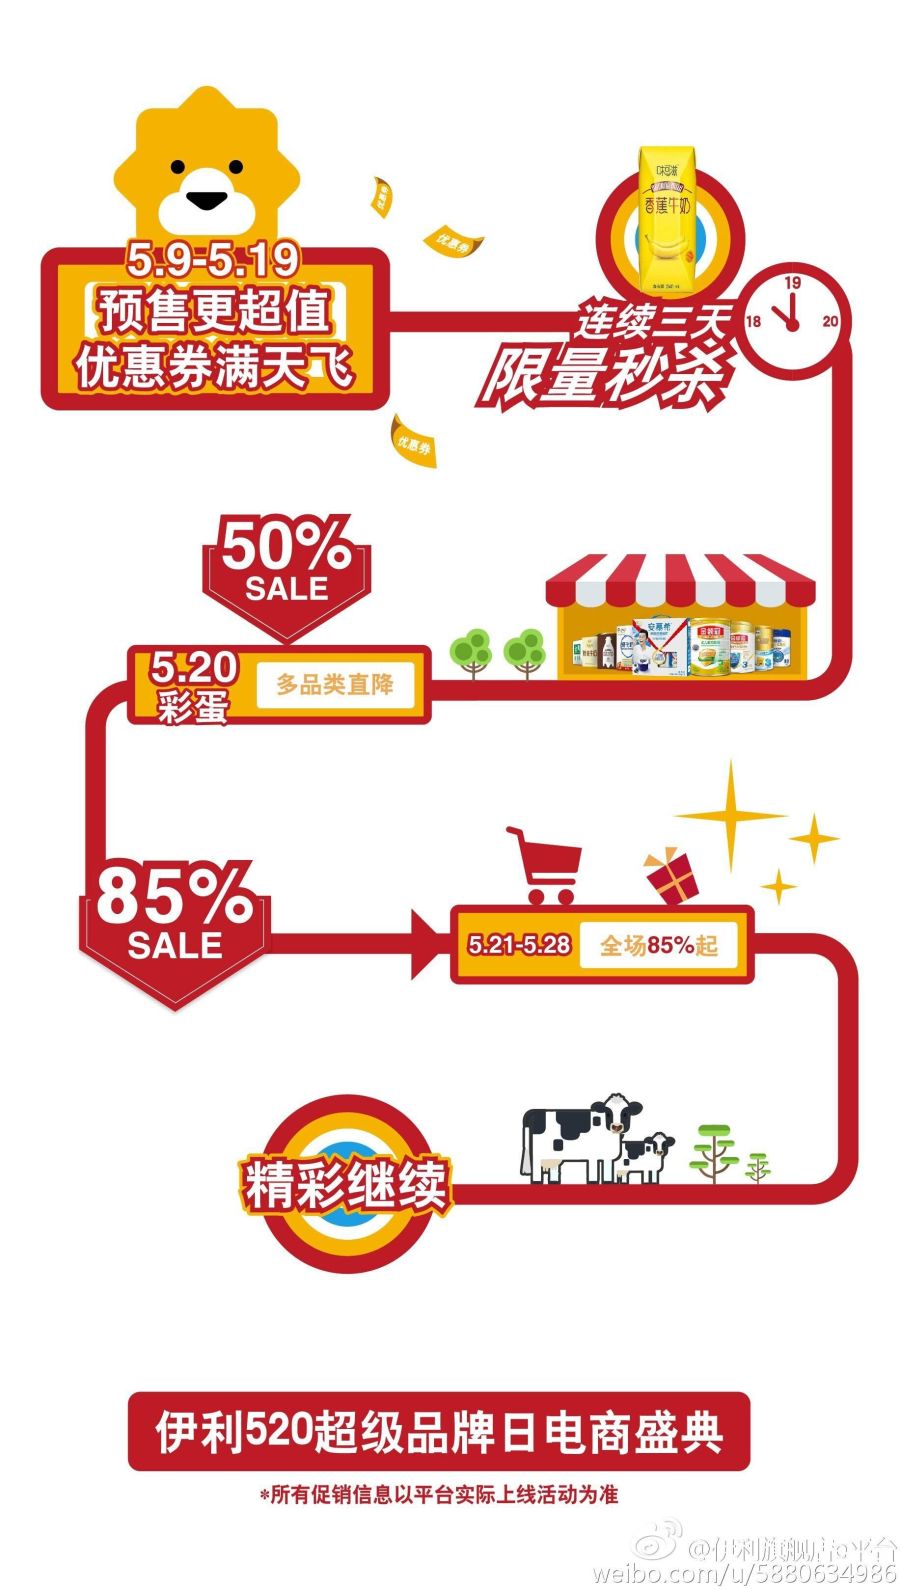 伊利 520超级品牌日 京东 苏宁宣传 流程图|其他